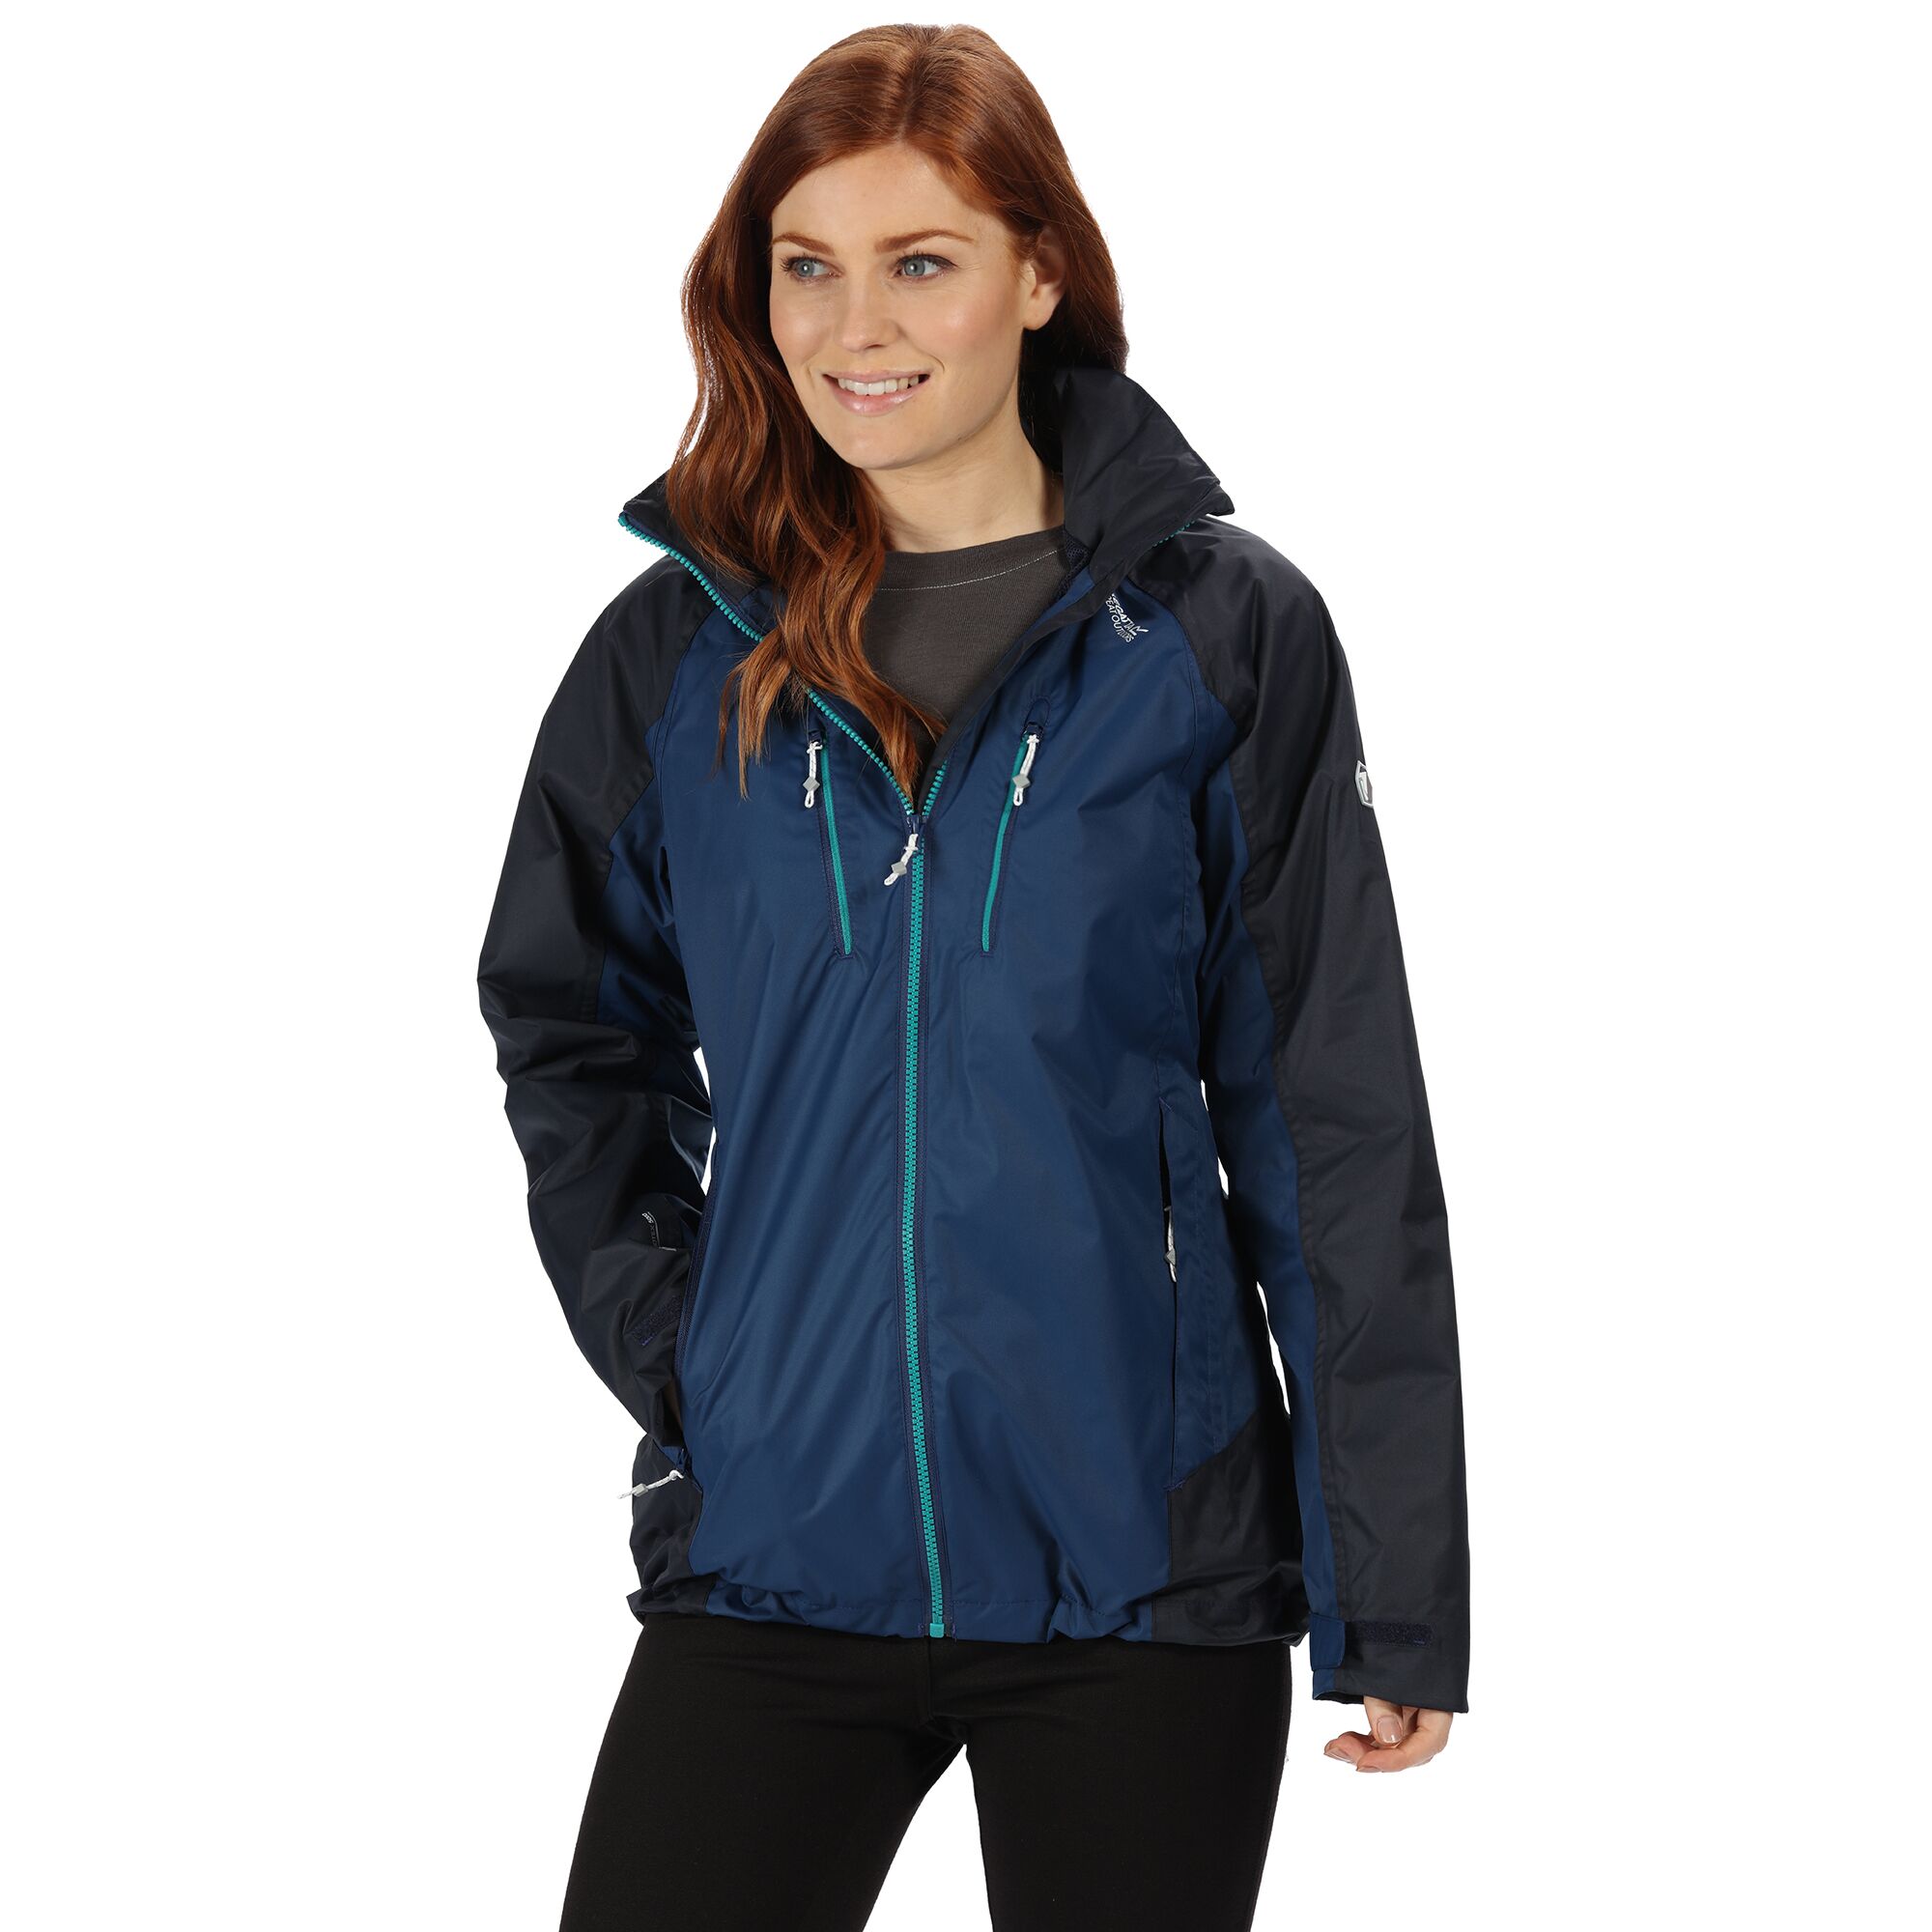 Regatta Calderdale III Womens Waterproof Jacket | eBay